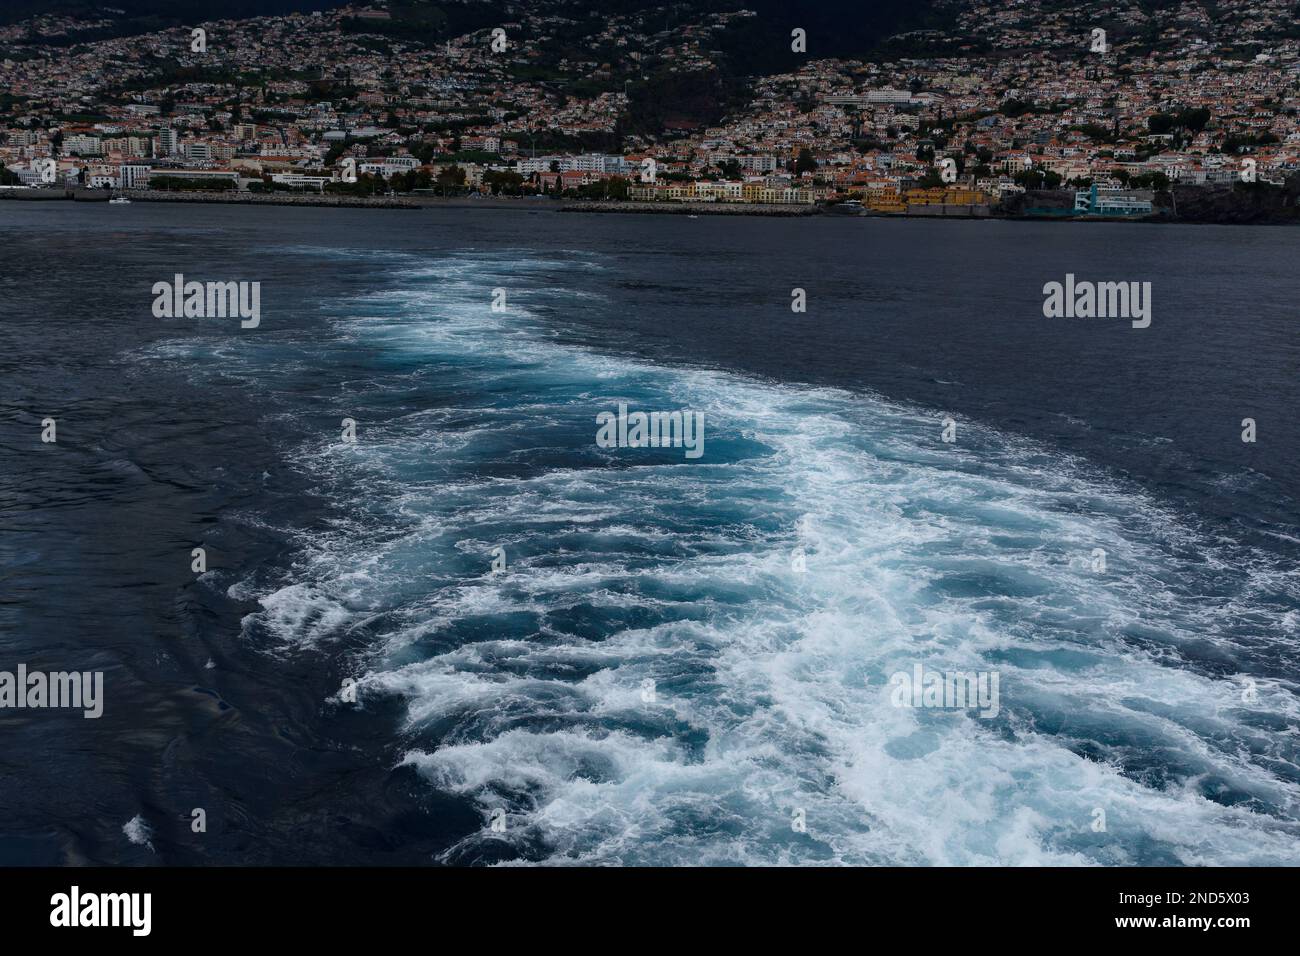 Kreuzfahrtschiff wird aktiviert, wenn das Schiff Funchal, Madeira, verlässt. Funchal ist im Hintergrund. Schönes weißes und blaues Wasser. Stockfoto